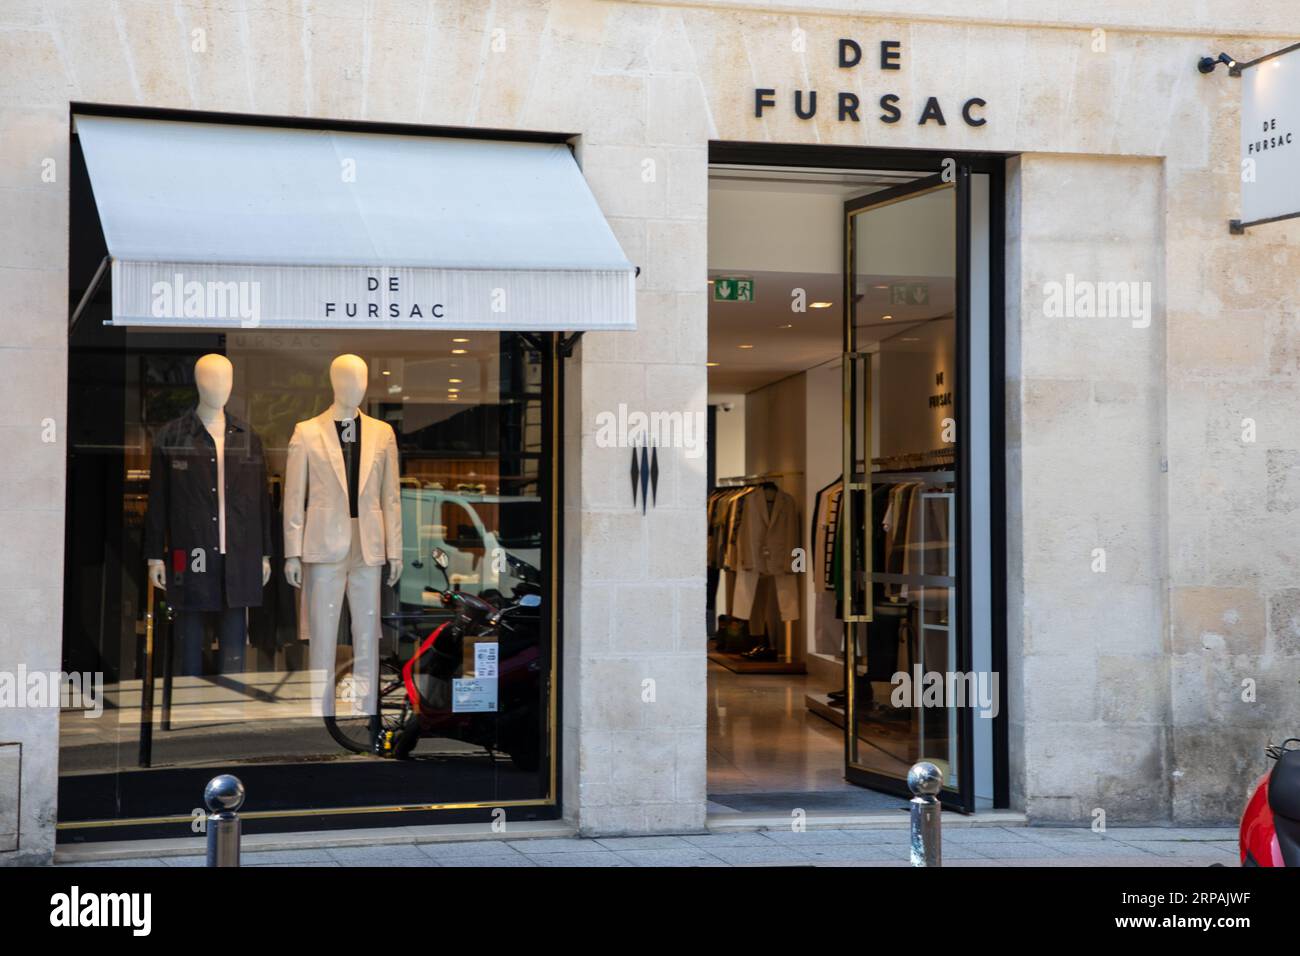 lyon , France - 08 30 2023 : de fursac facade shop logo brand and text ...